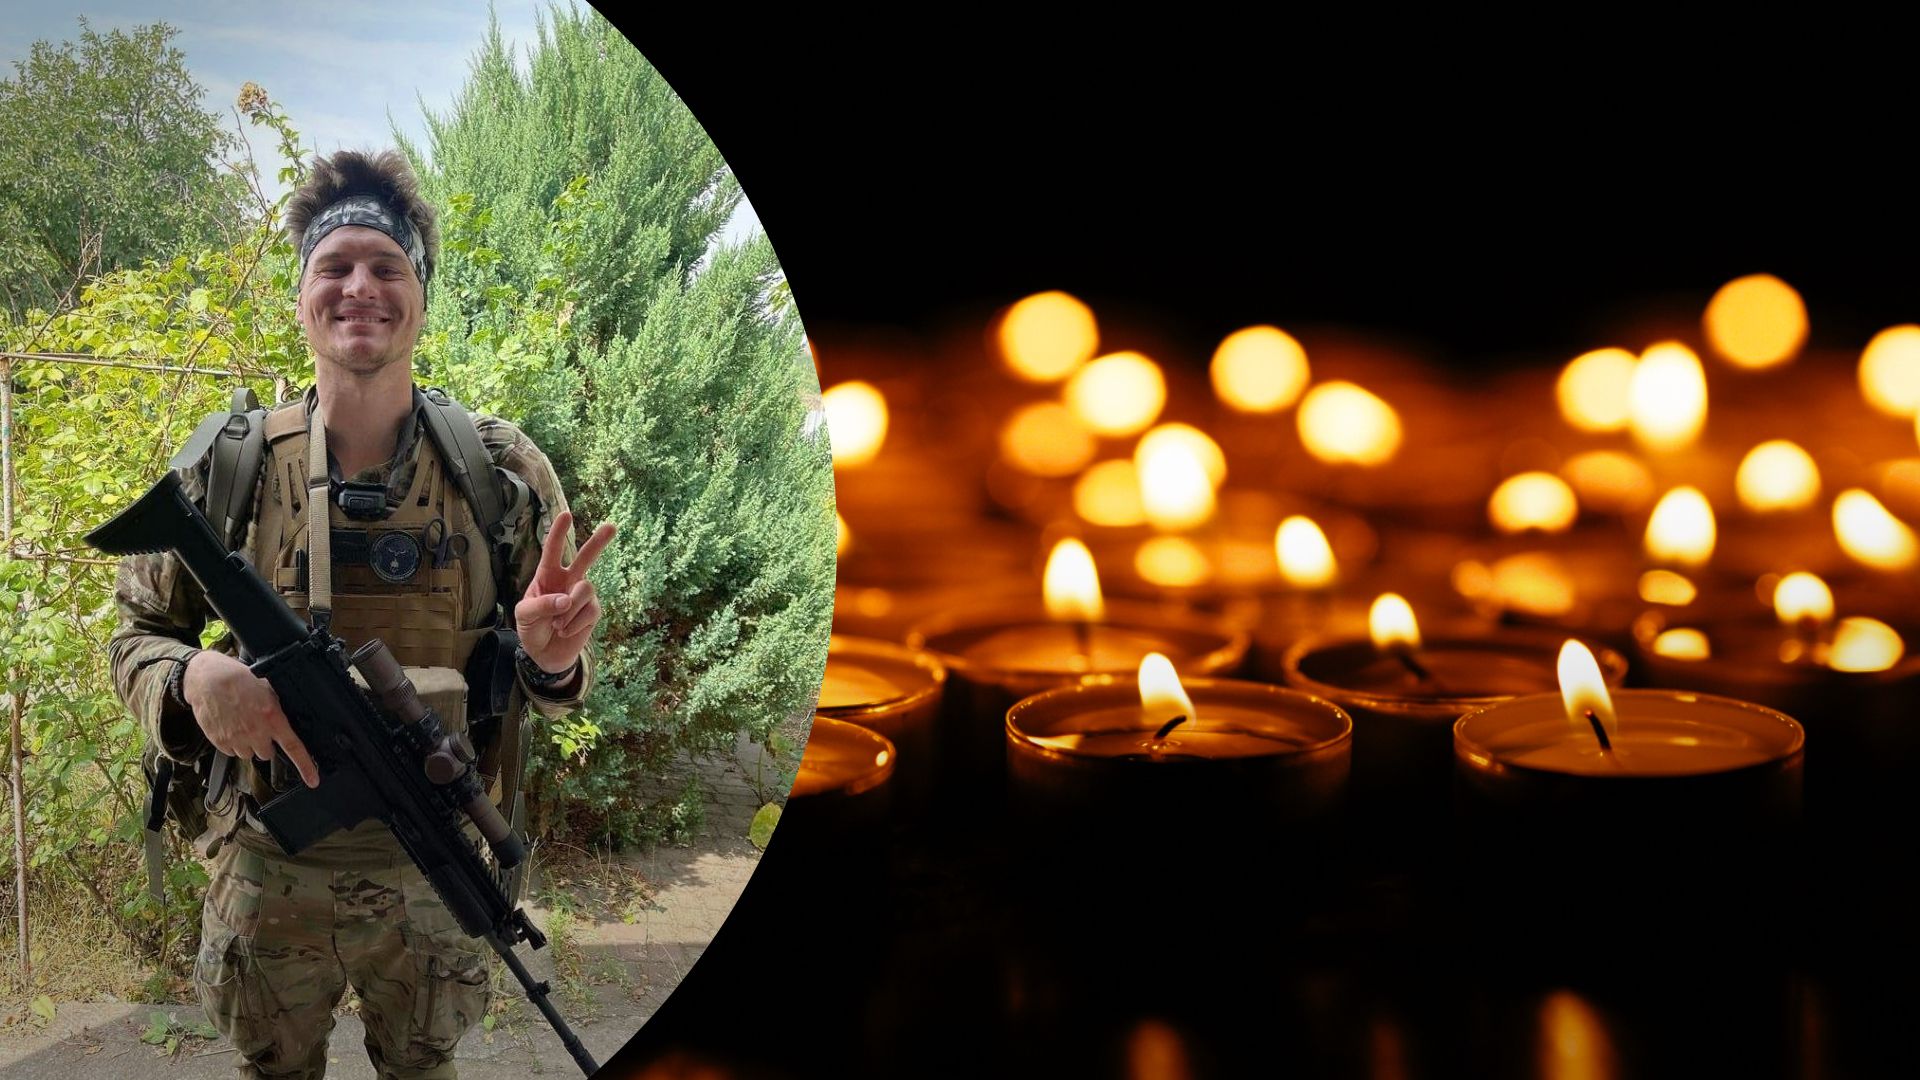 Цехмістренко загинув у війні проти України - канадського добровольця вбили біля Бахмута